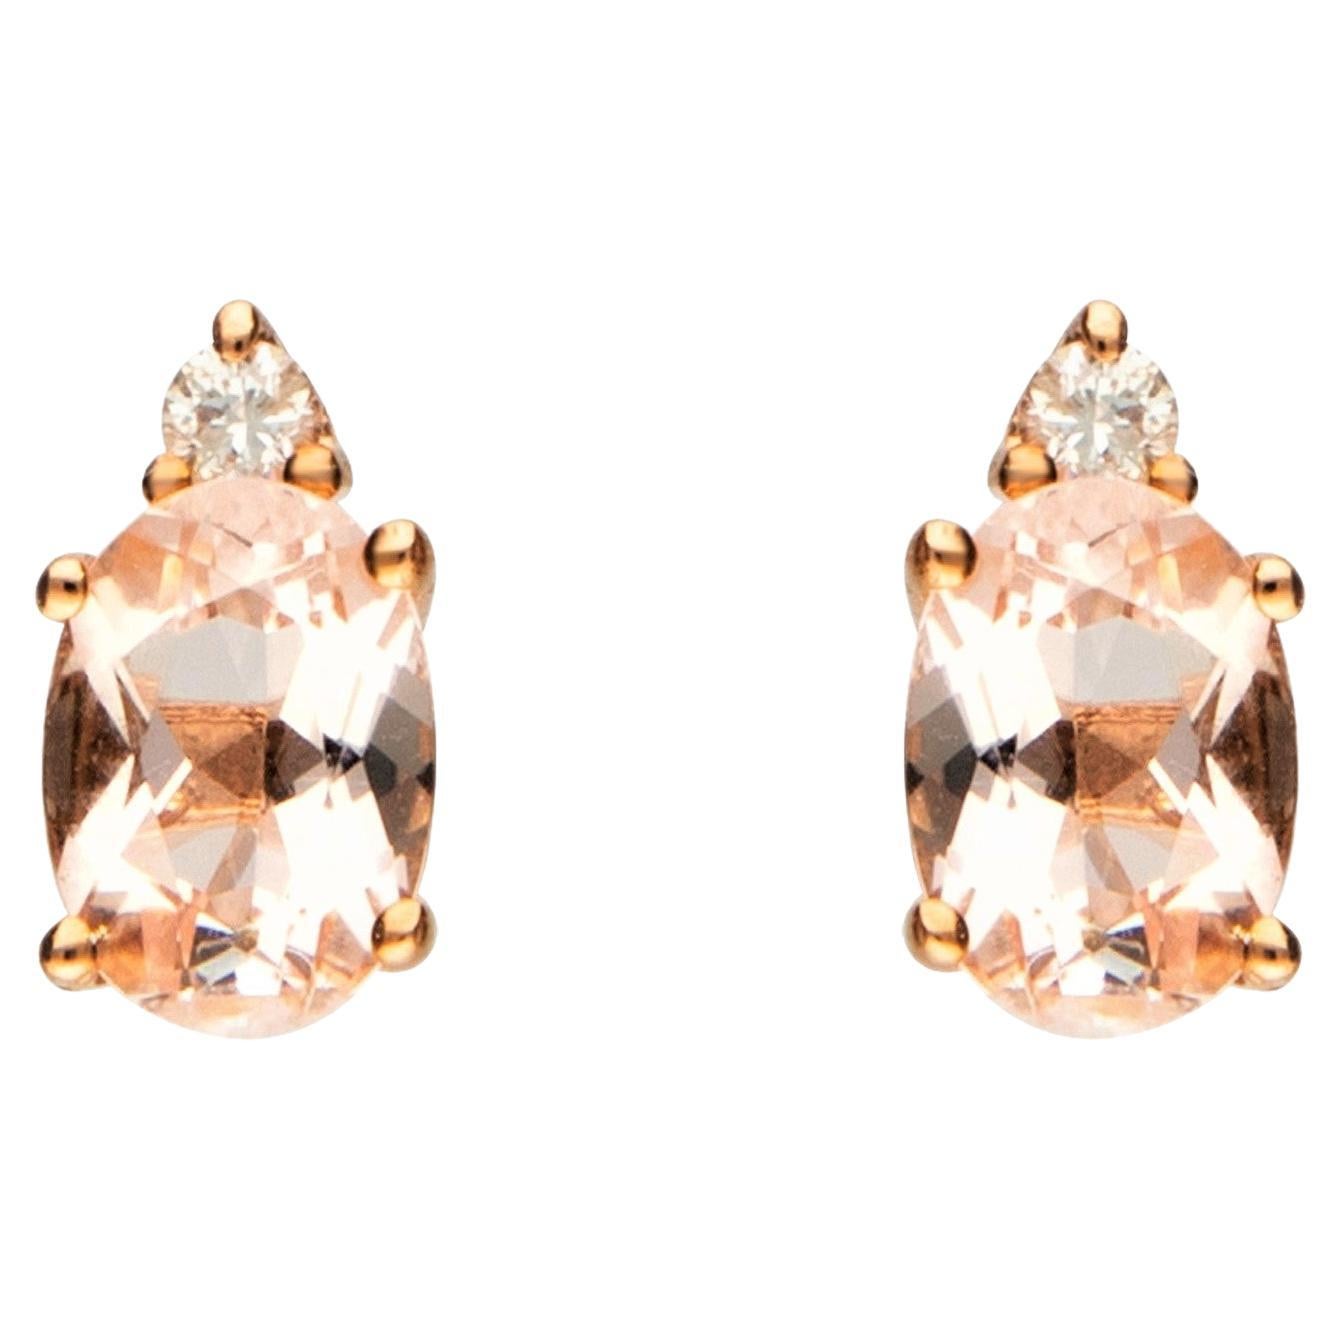 Boucle d'oreille en or rose 10 carats Morganite 1.41 carat, taille ovale et diamant